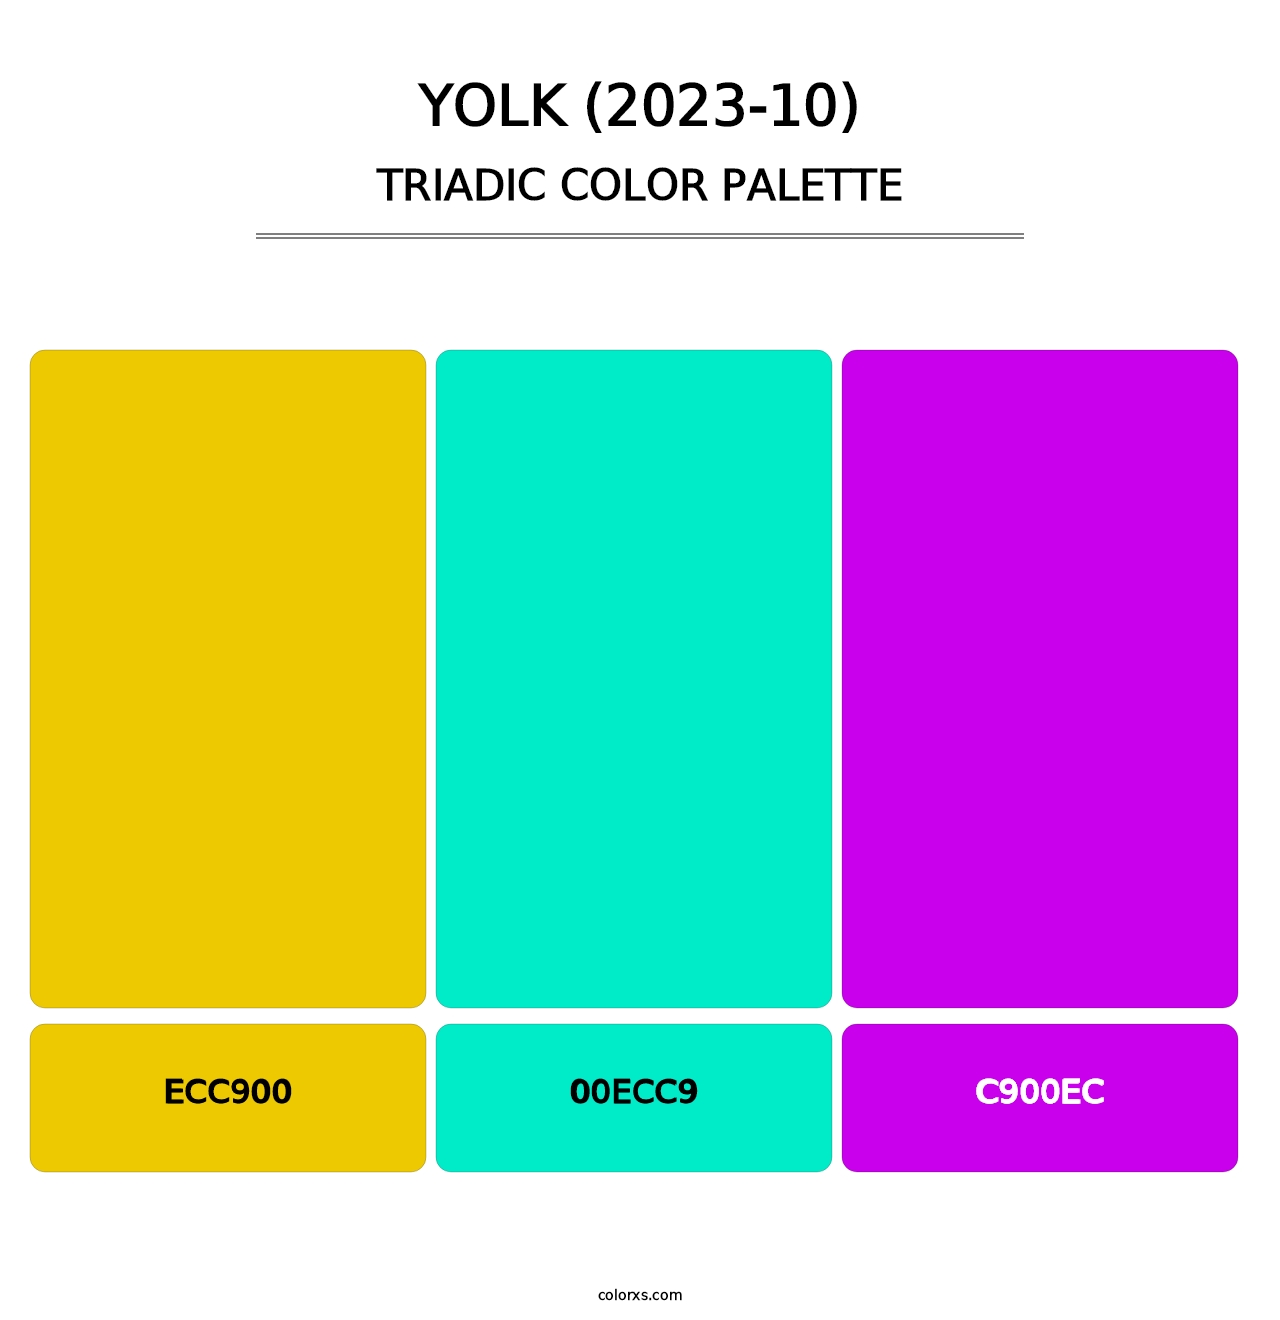 Yolk (2023-10) - Triadic Color Palette